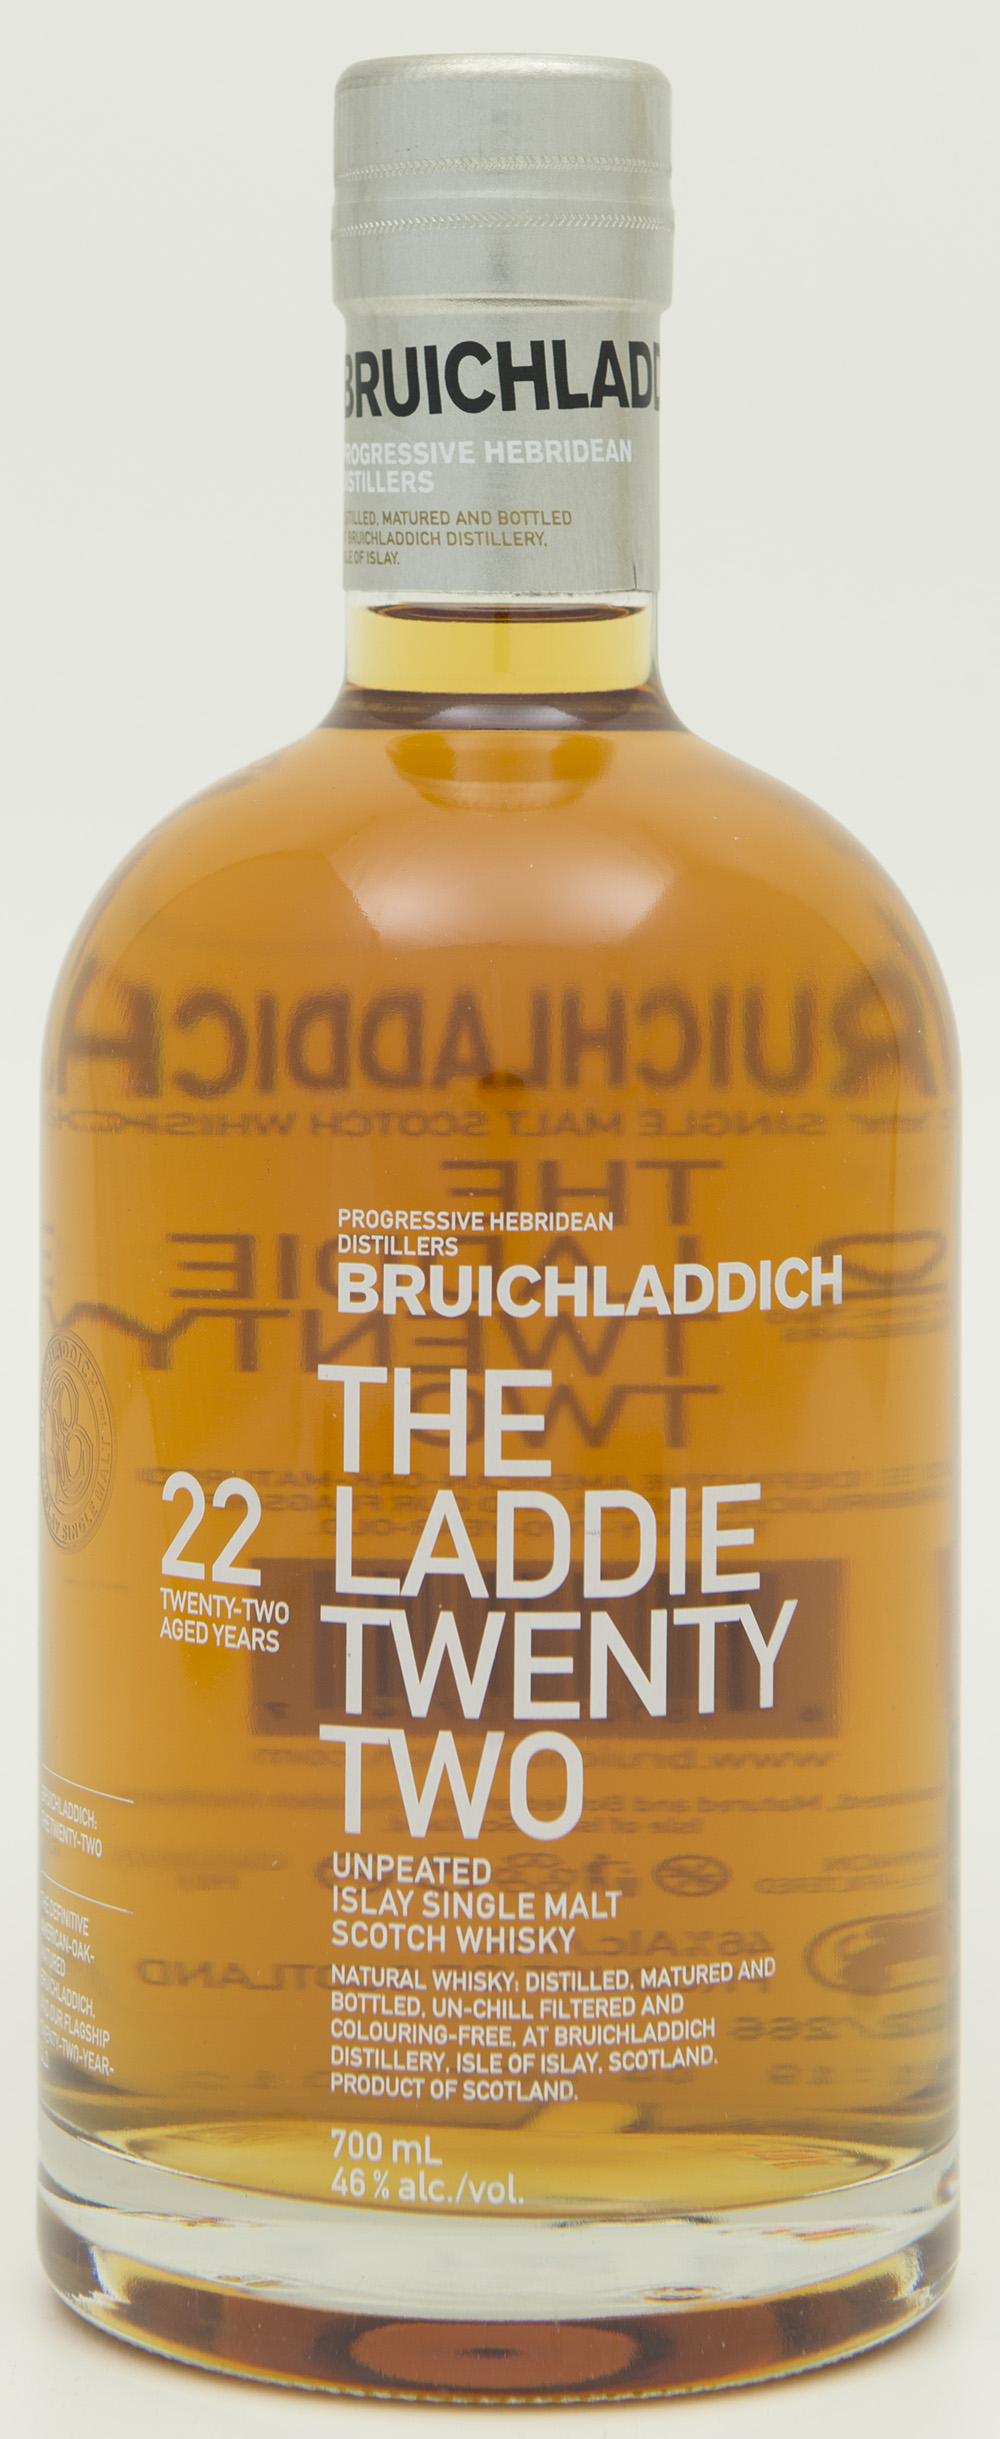 Billede: DSC_0772 - Bruichladdich The Laddie Twenty Two - bottle front.jpg